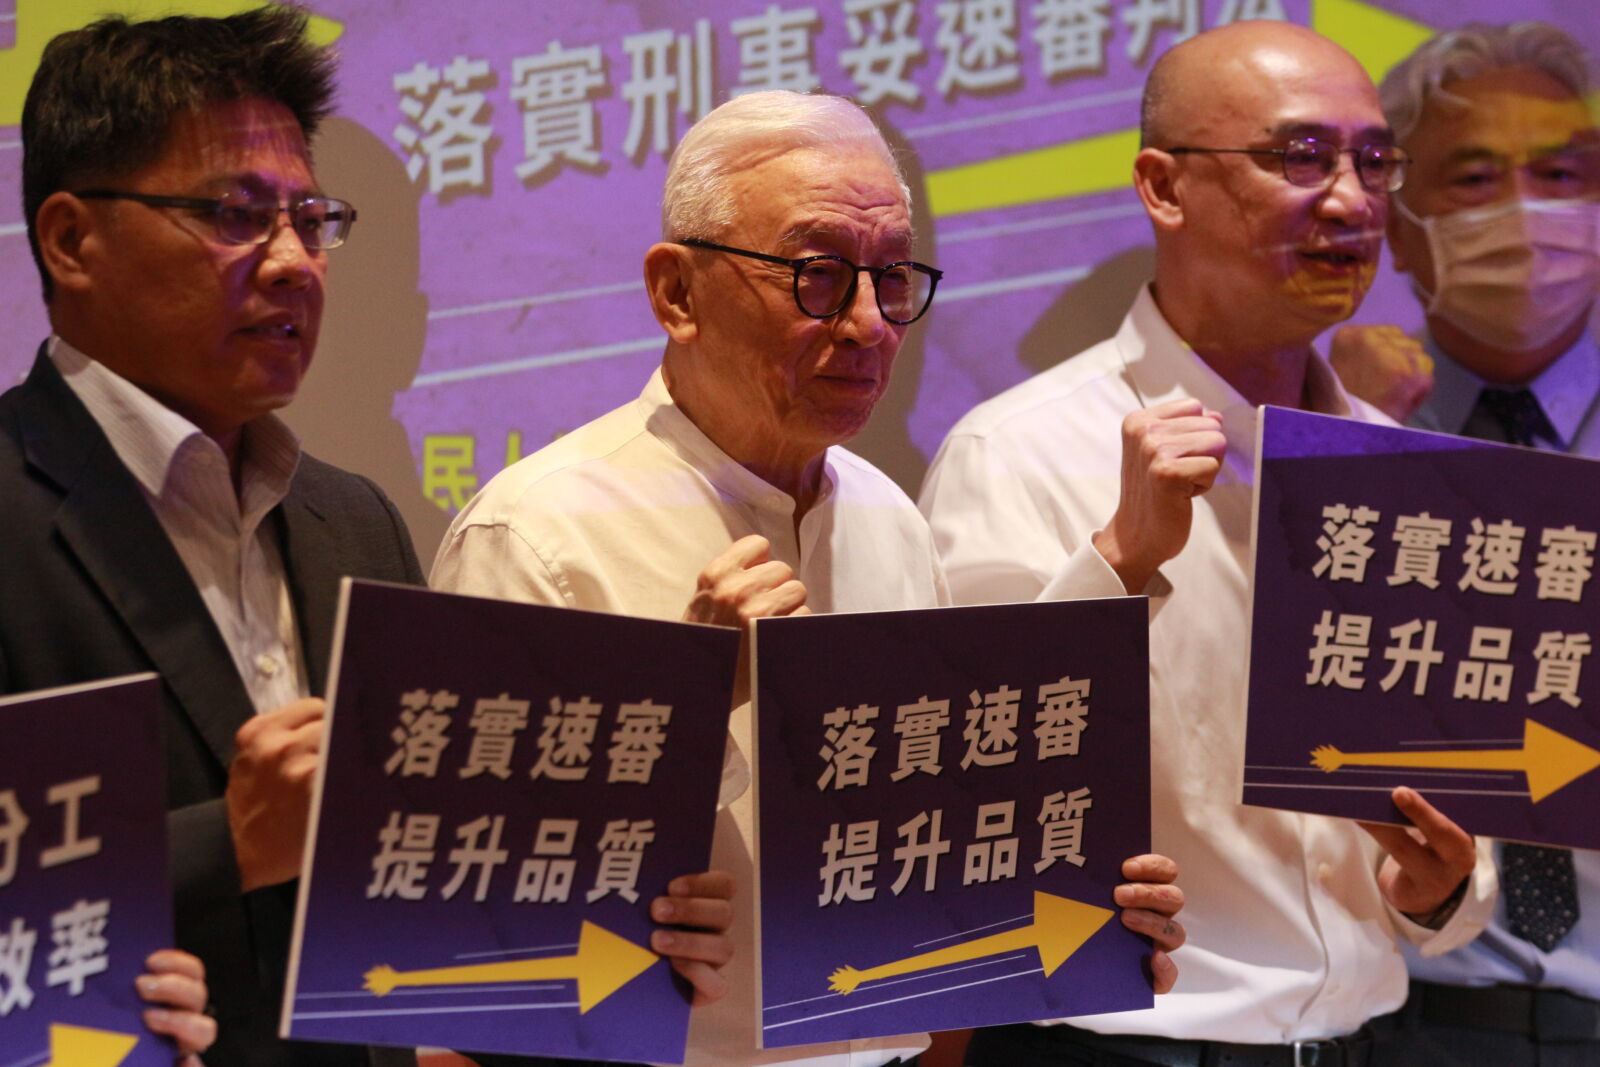 檢察官爆離職潮 台灣公民人權聯盟呼籲「檢警分工、落實刑事妥速審判法」 233